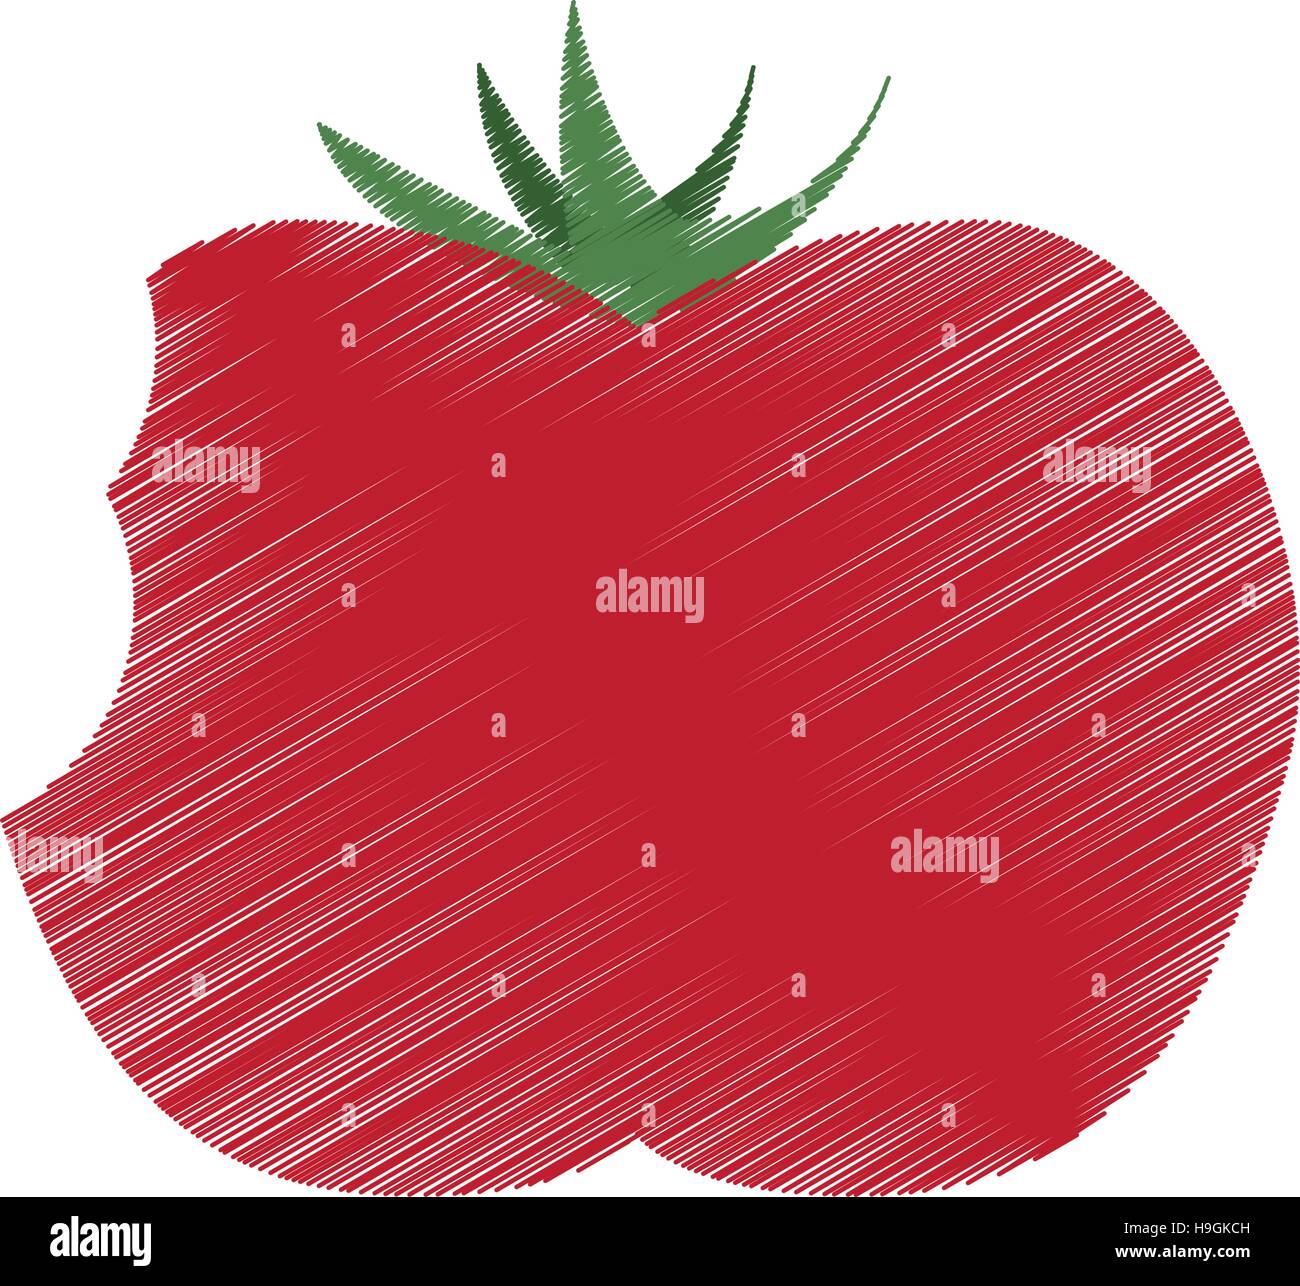 farbige Zeichnung Tomate Biss Handsymbol Stock Vektor